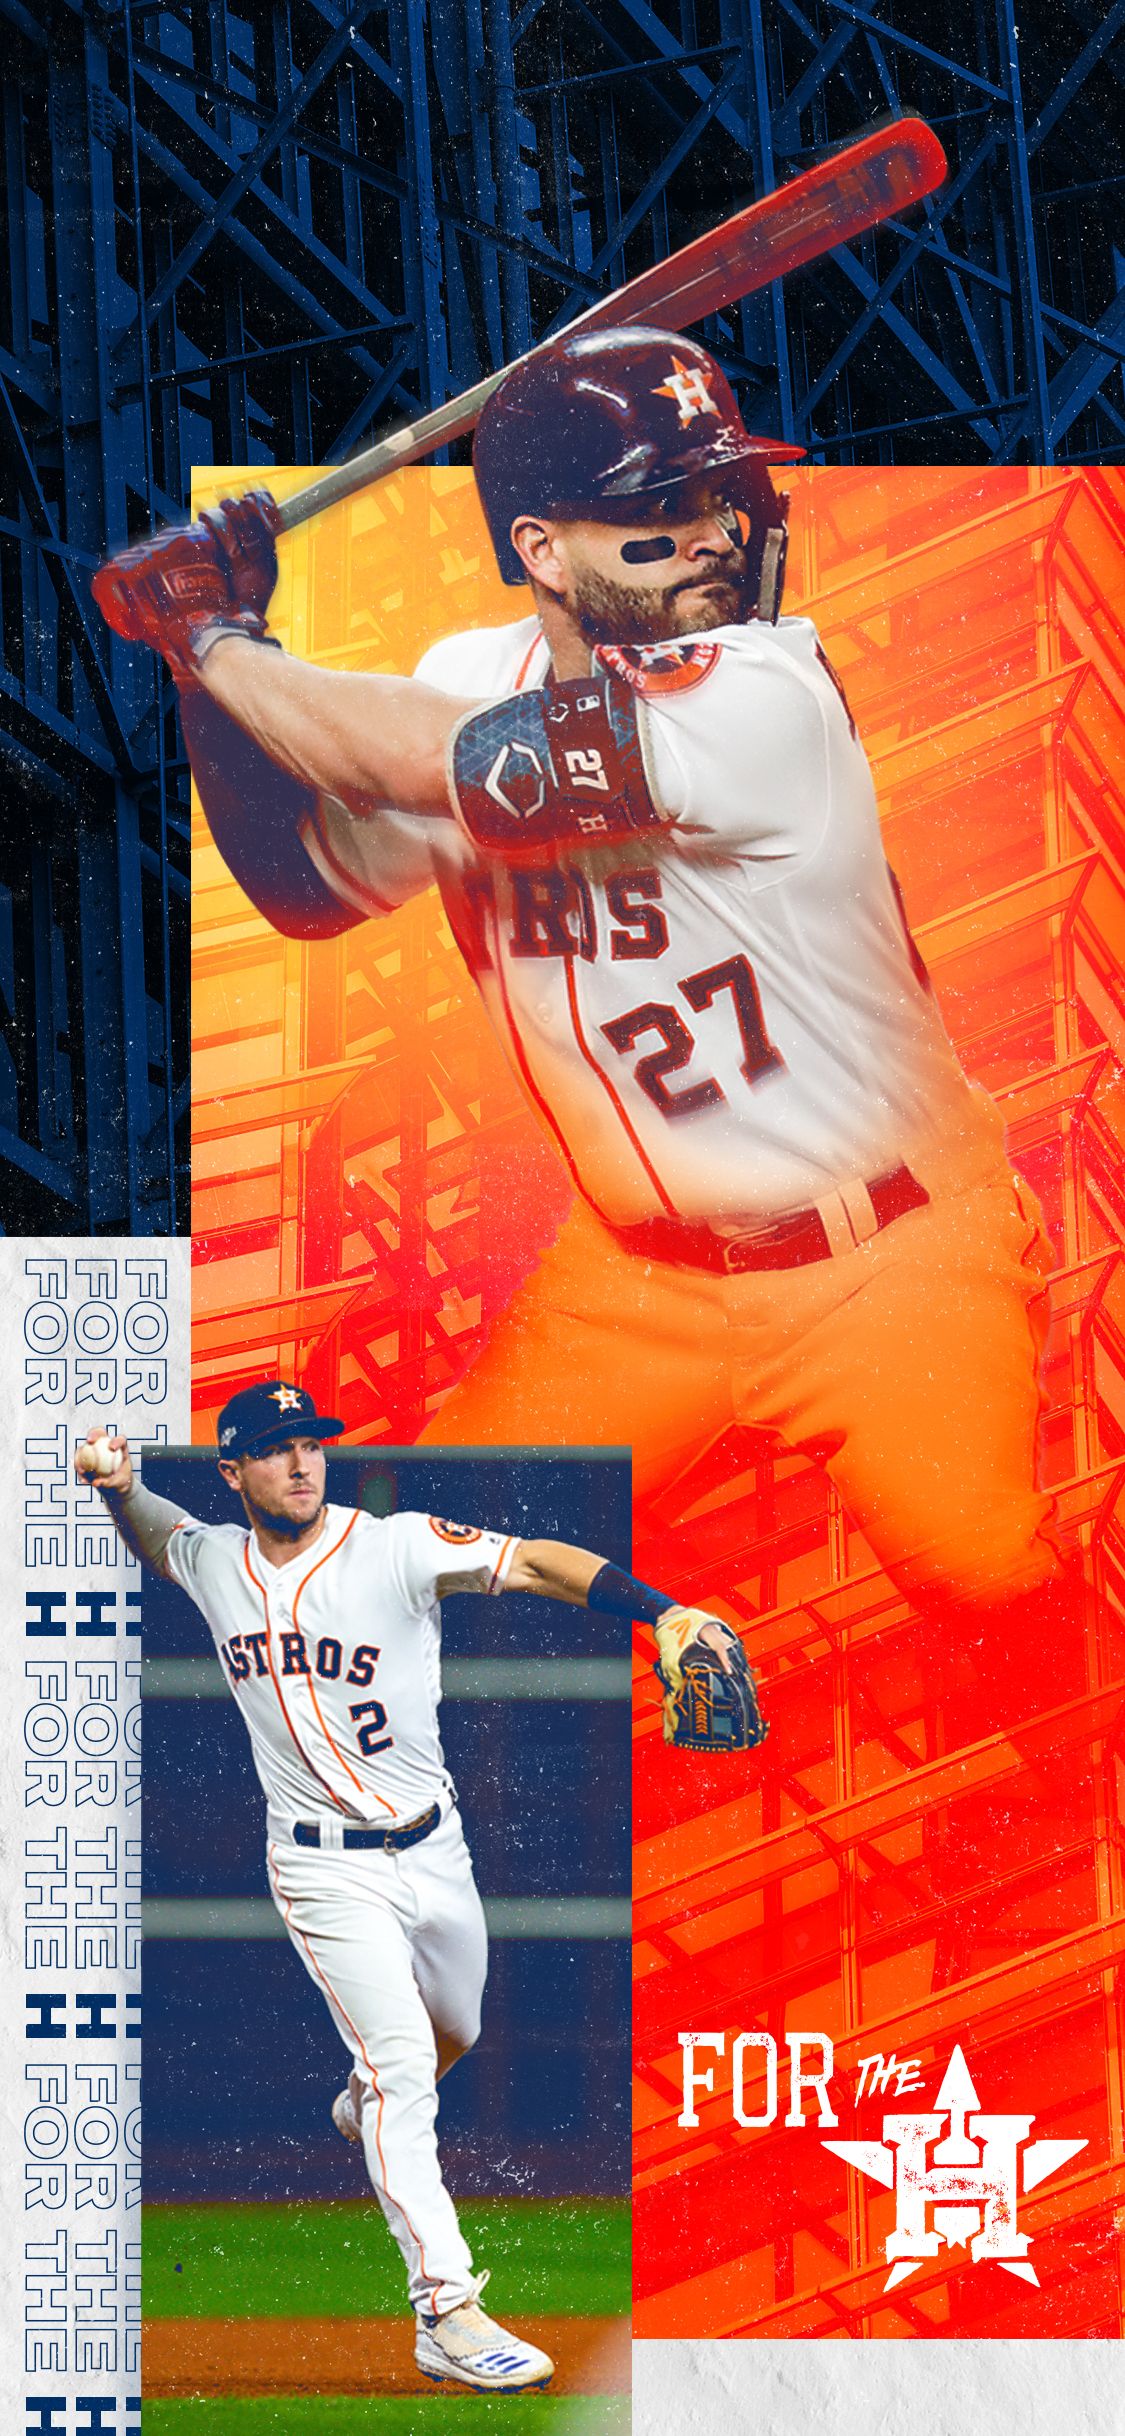 HOUSTON ASTROS mlb baseball (31) wallpaper, 2048x1494, 232058